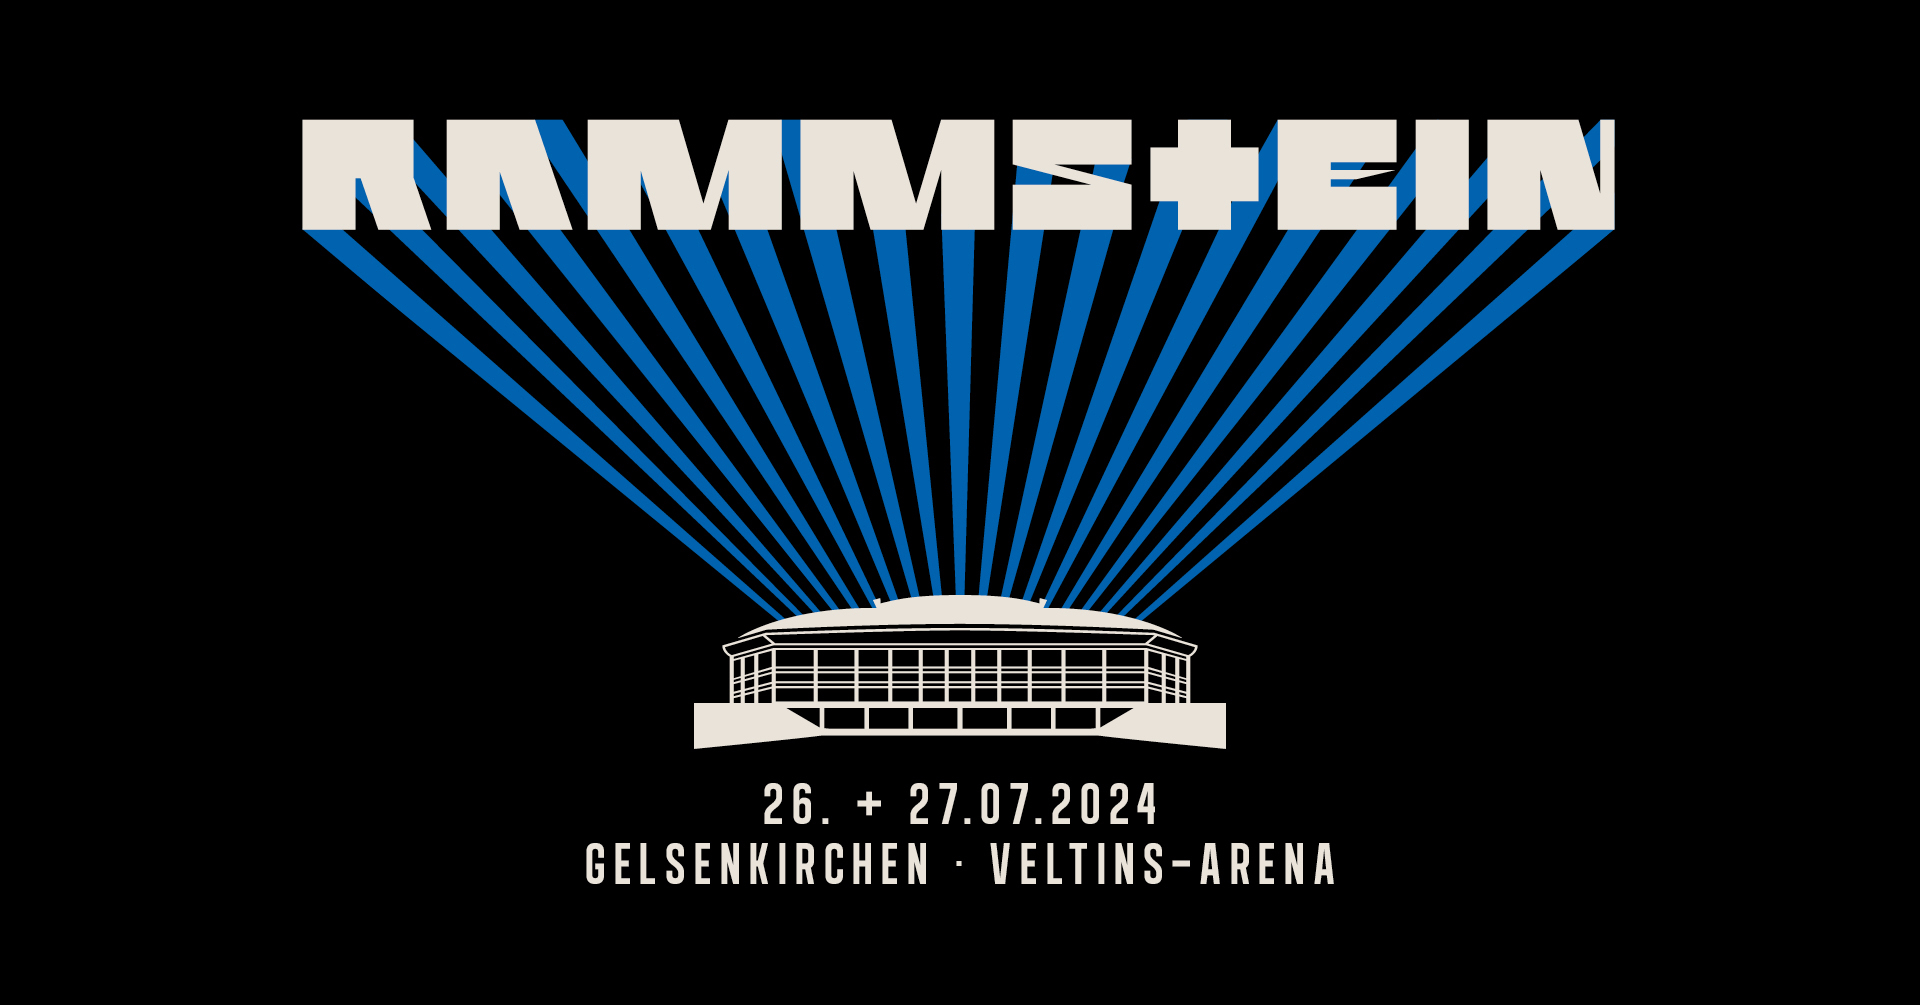 26.07.2024 -Rammstein - Europe Stadium Tour 2024@Gelsenkirchen/VELTINS-Arena